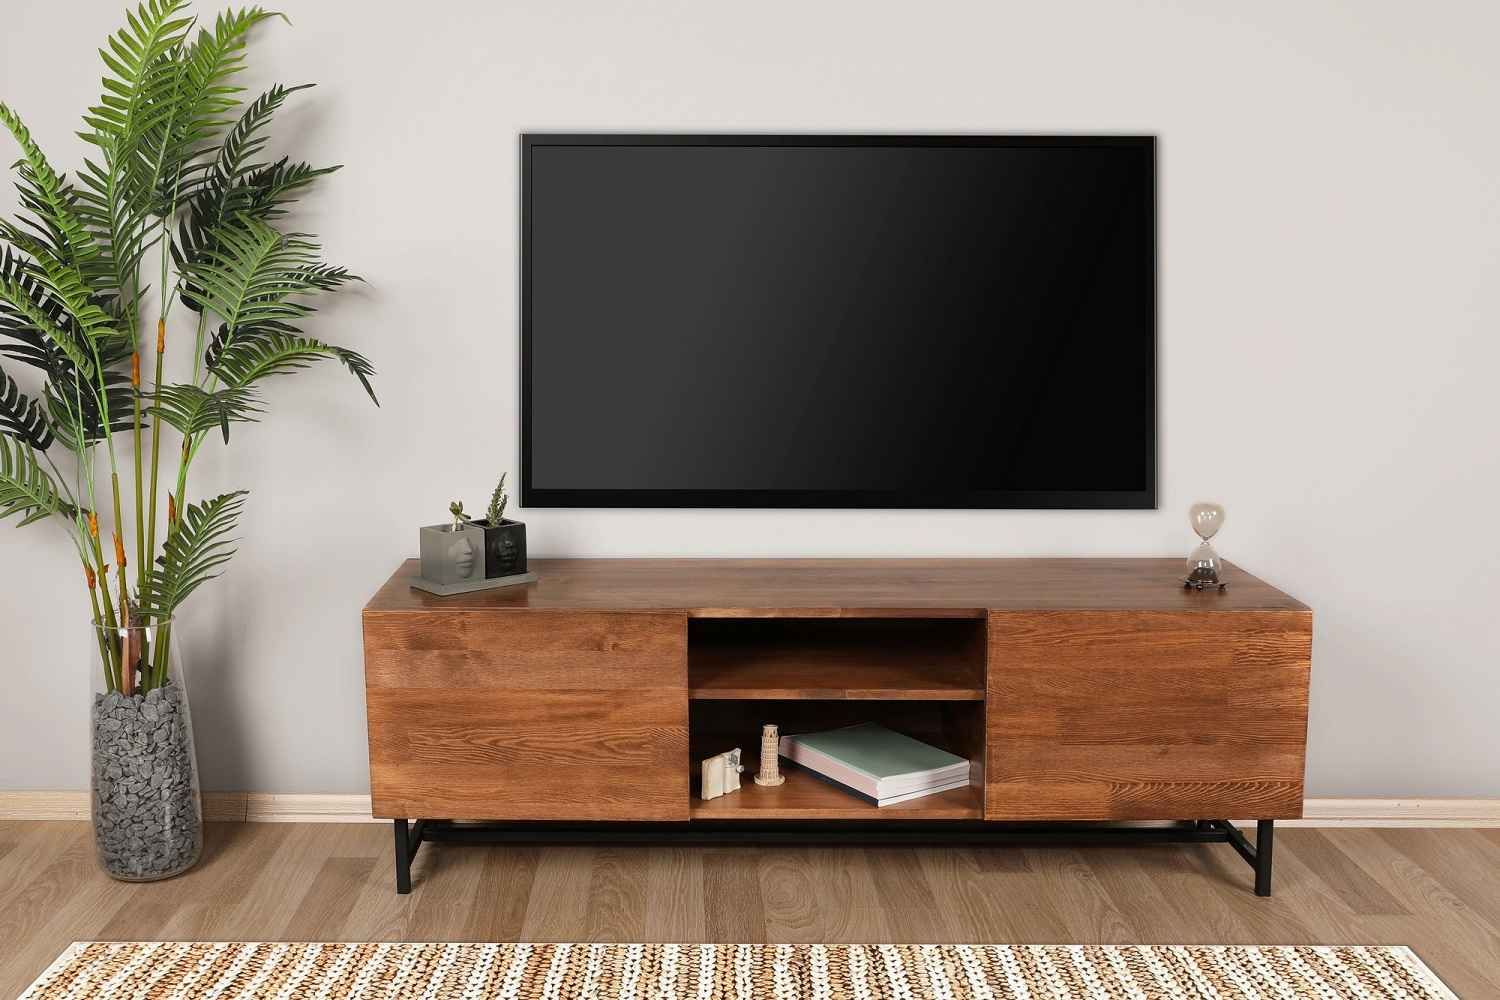 Sofahouse Dizajnový TV stolík Nafasi 150 cm vzor orech